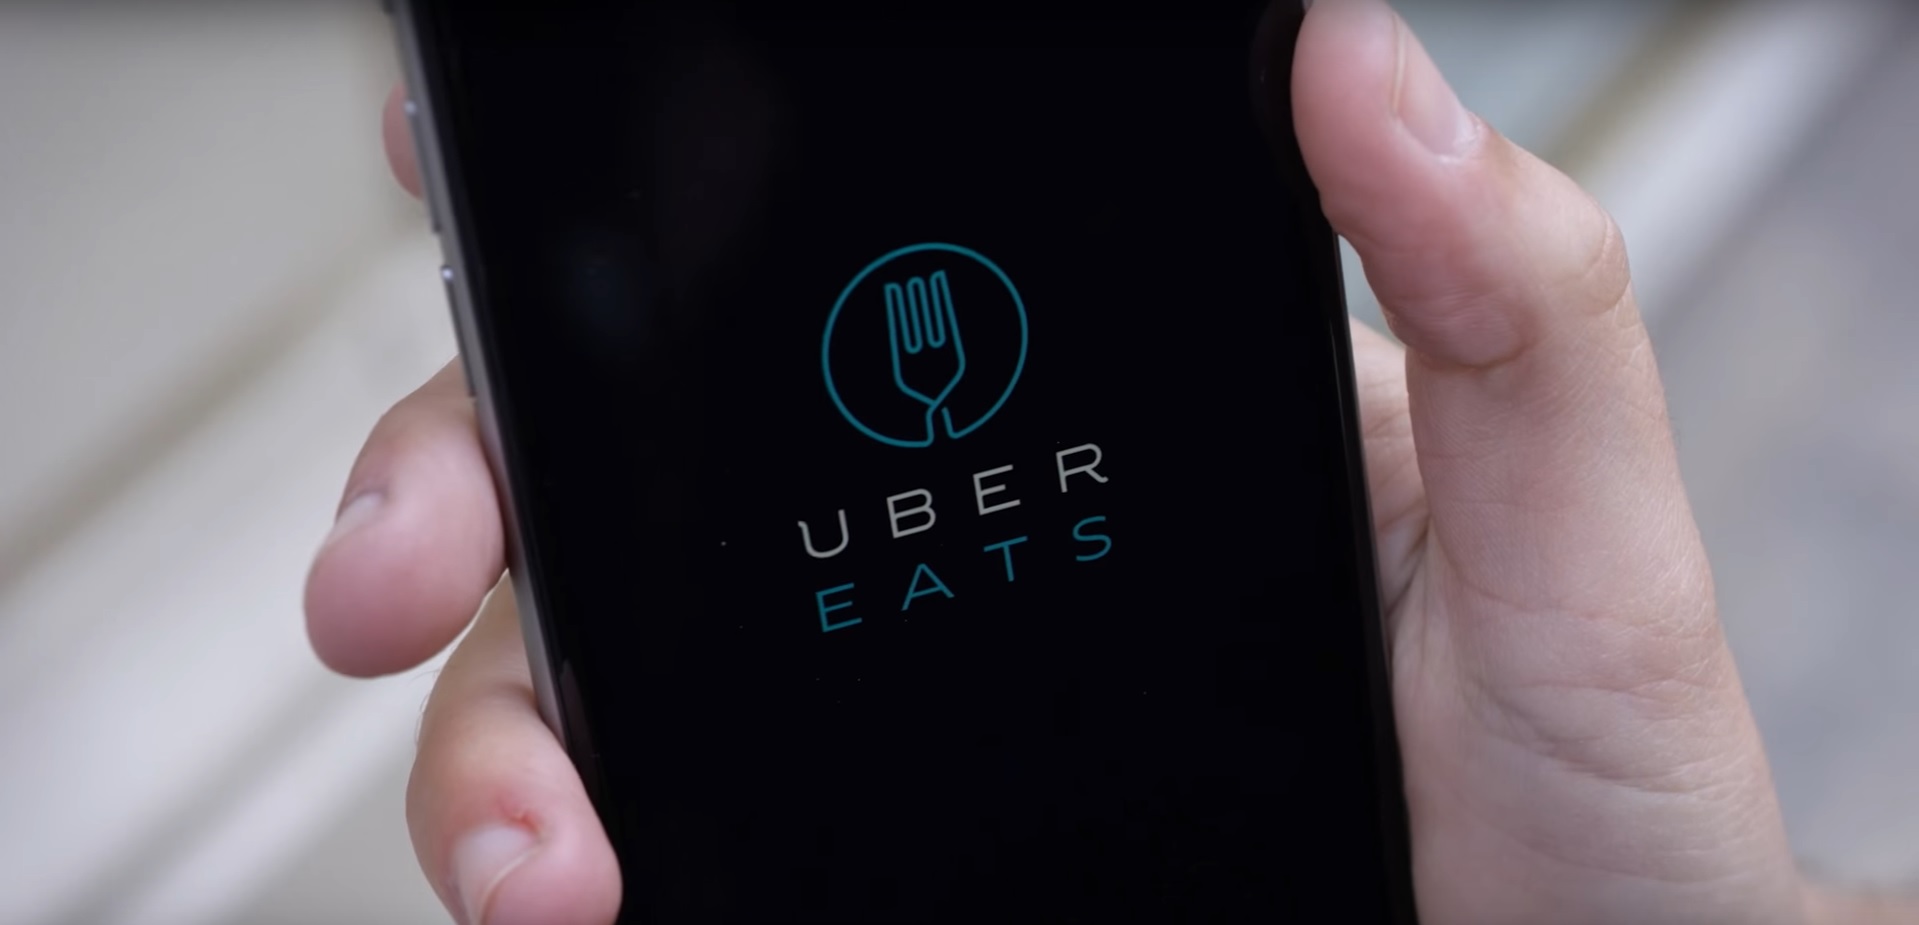 Az Uber étteremajánló rendszere az első lépés lehet az új modell bevezetésére. Kép: YouTube/Uber